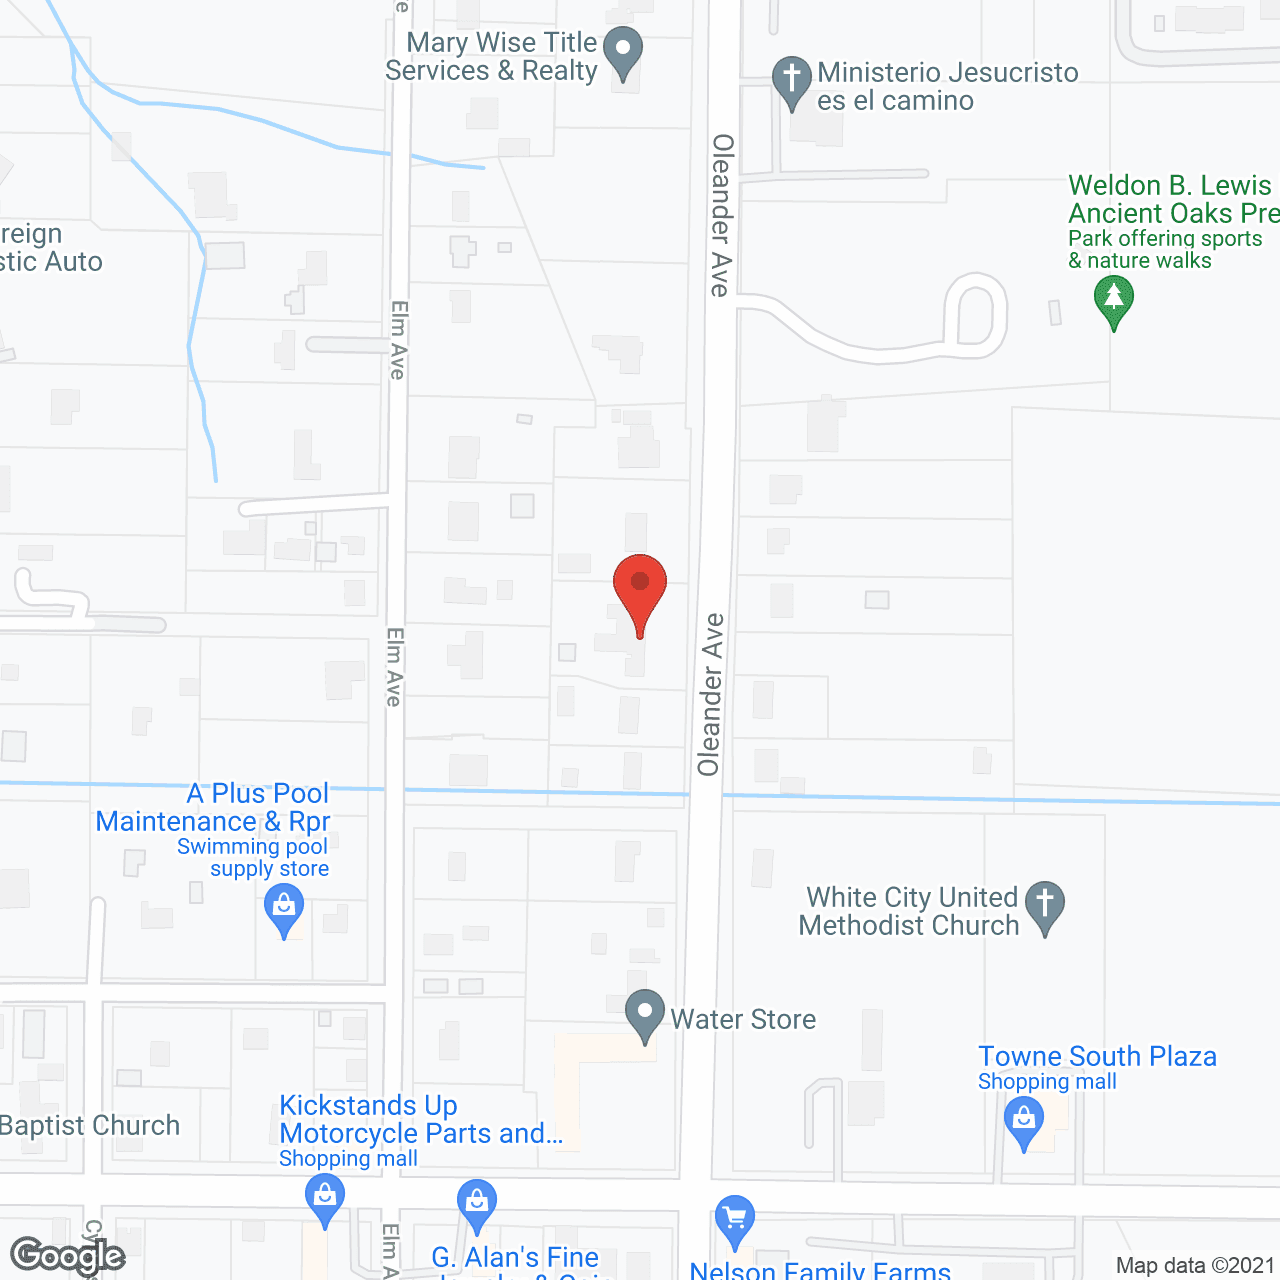 Divine Senior Care in google map